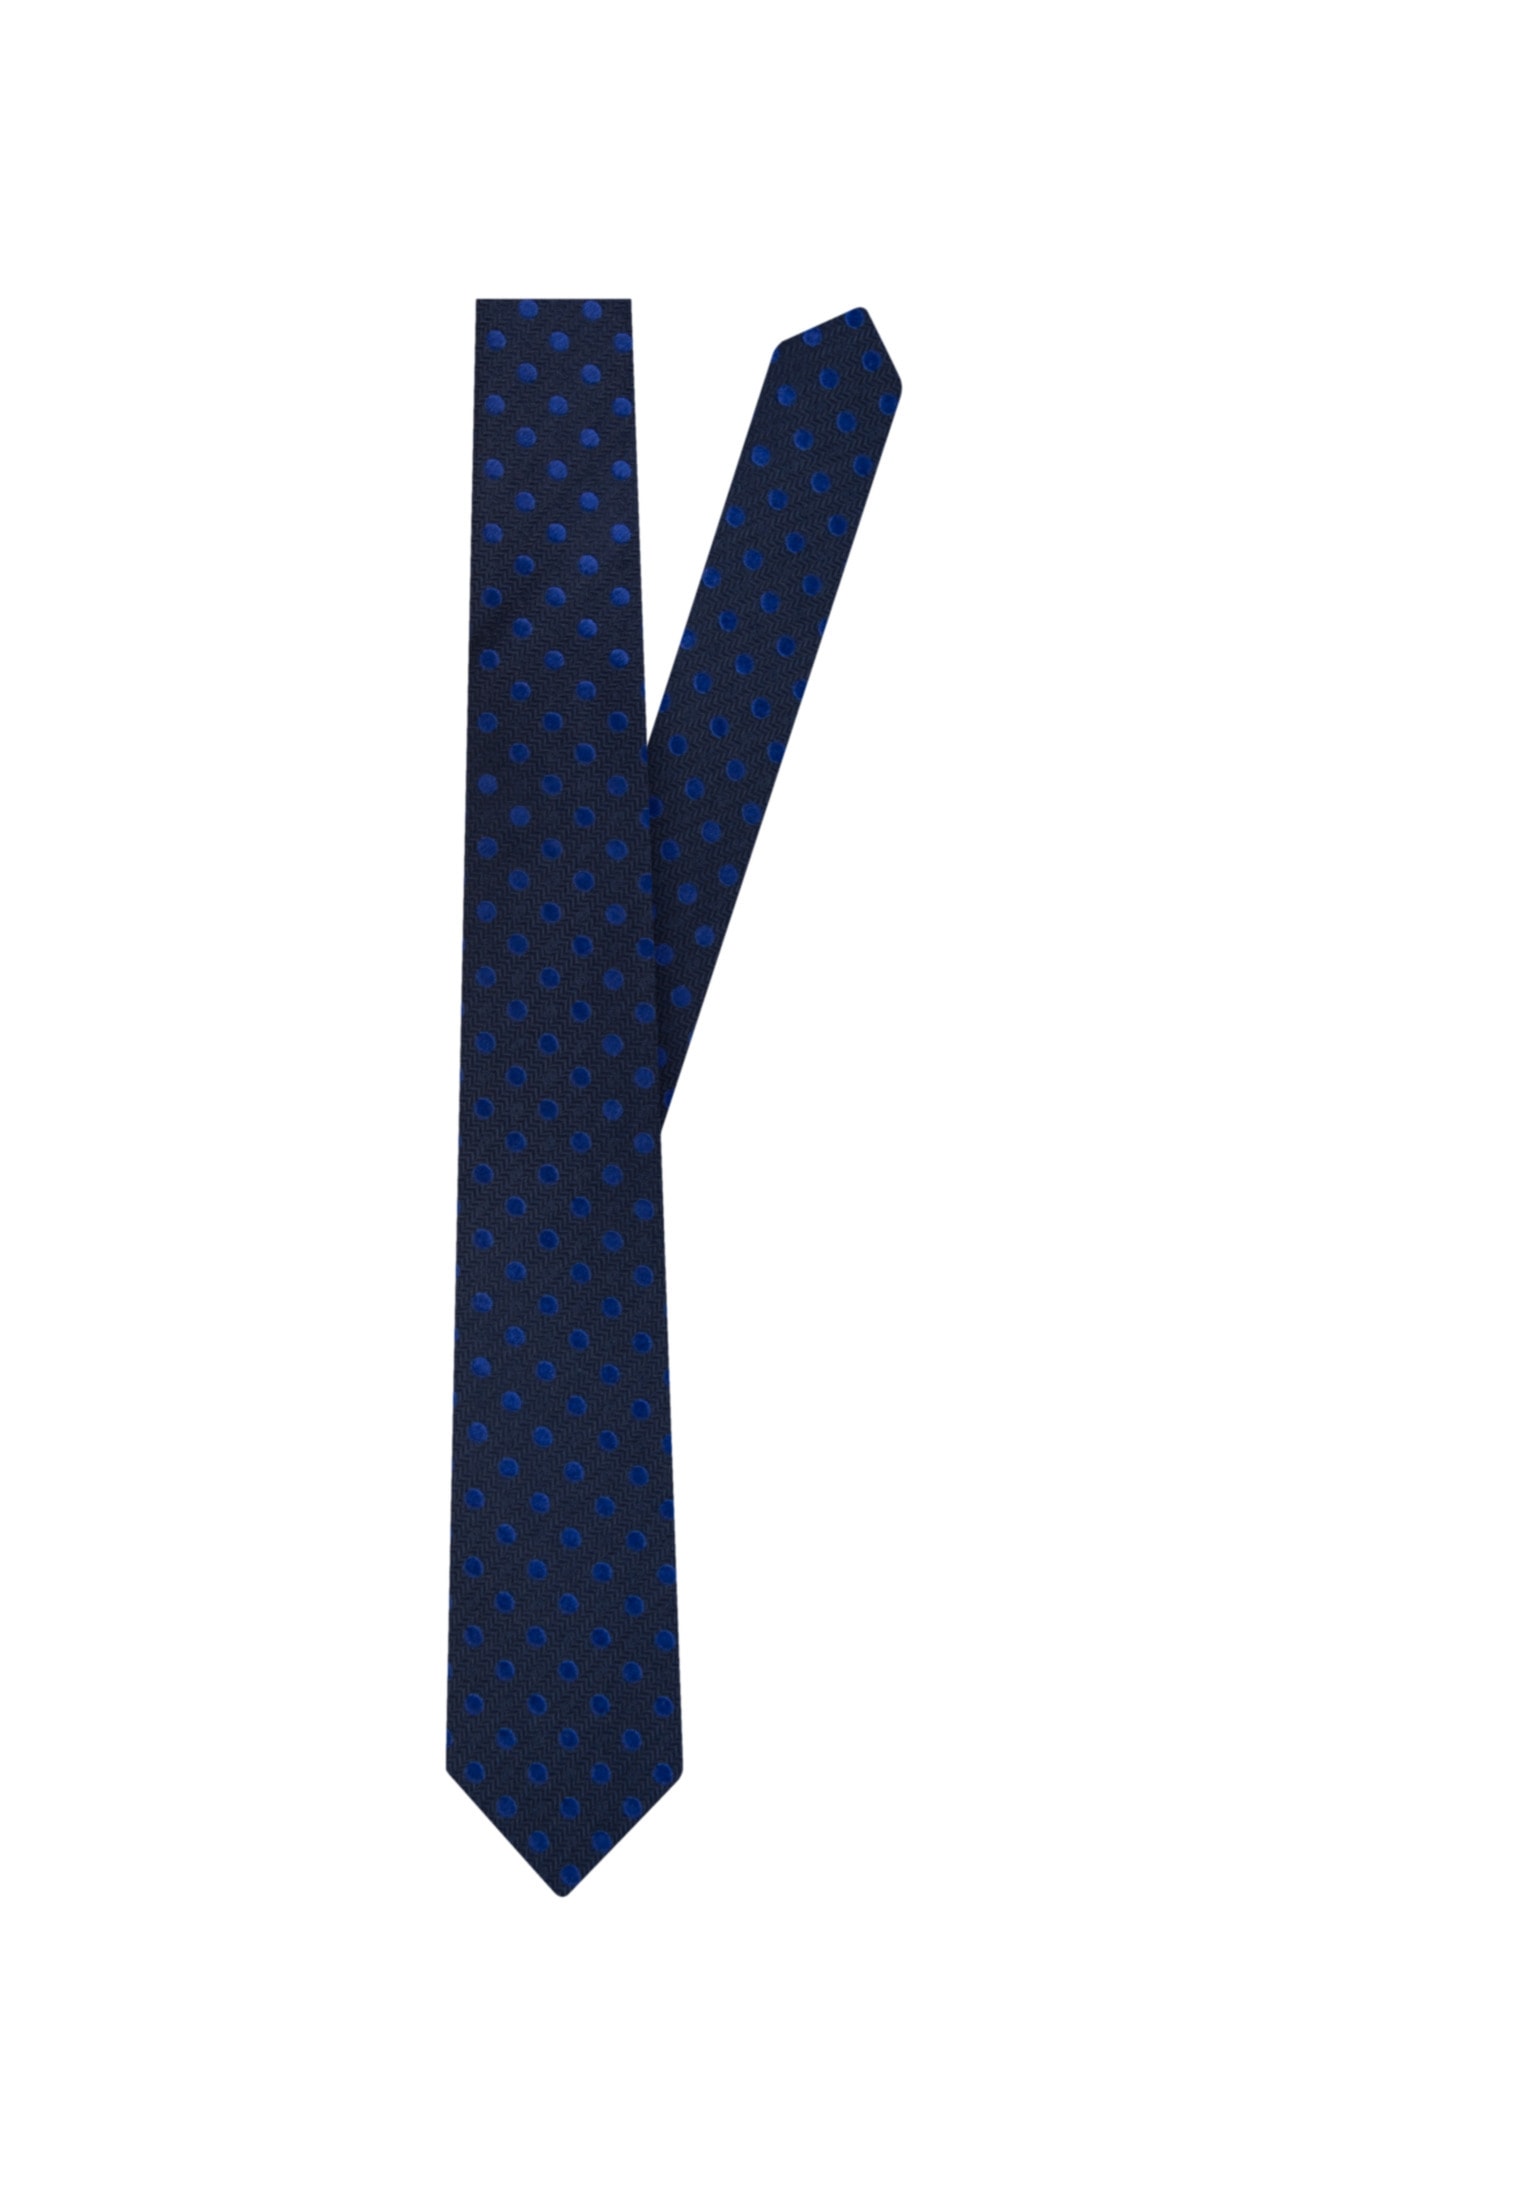 Krawatten kaufen ohne ➤ Mindestbestellwert